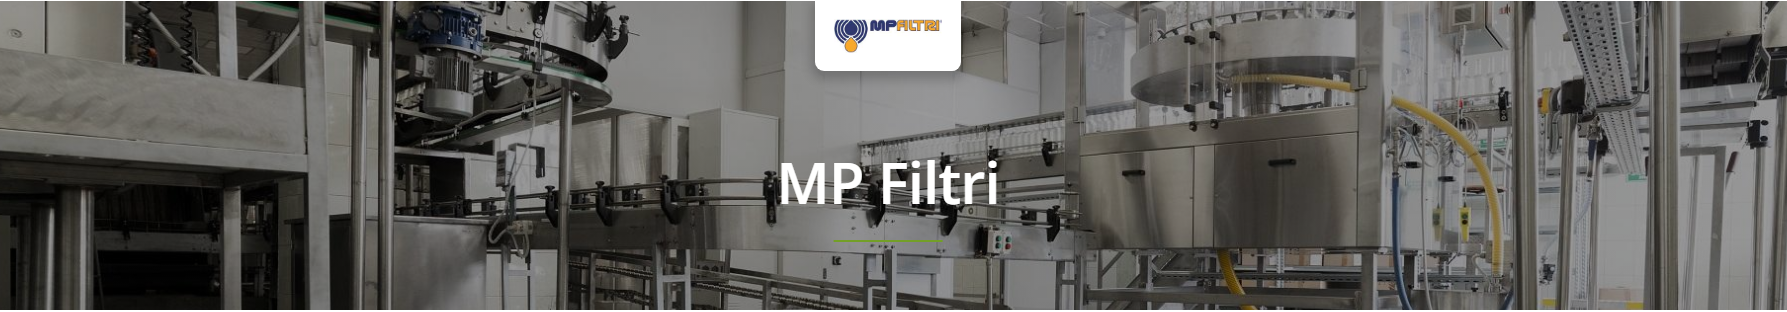 MP Filtri Offline Filtration Units